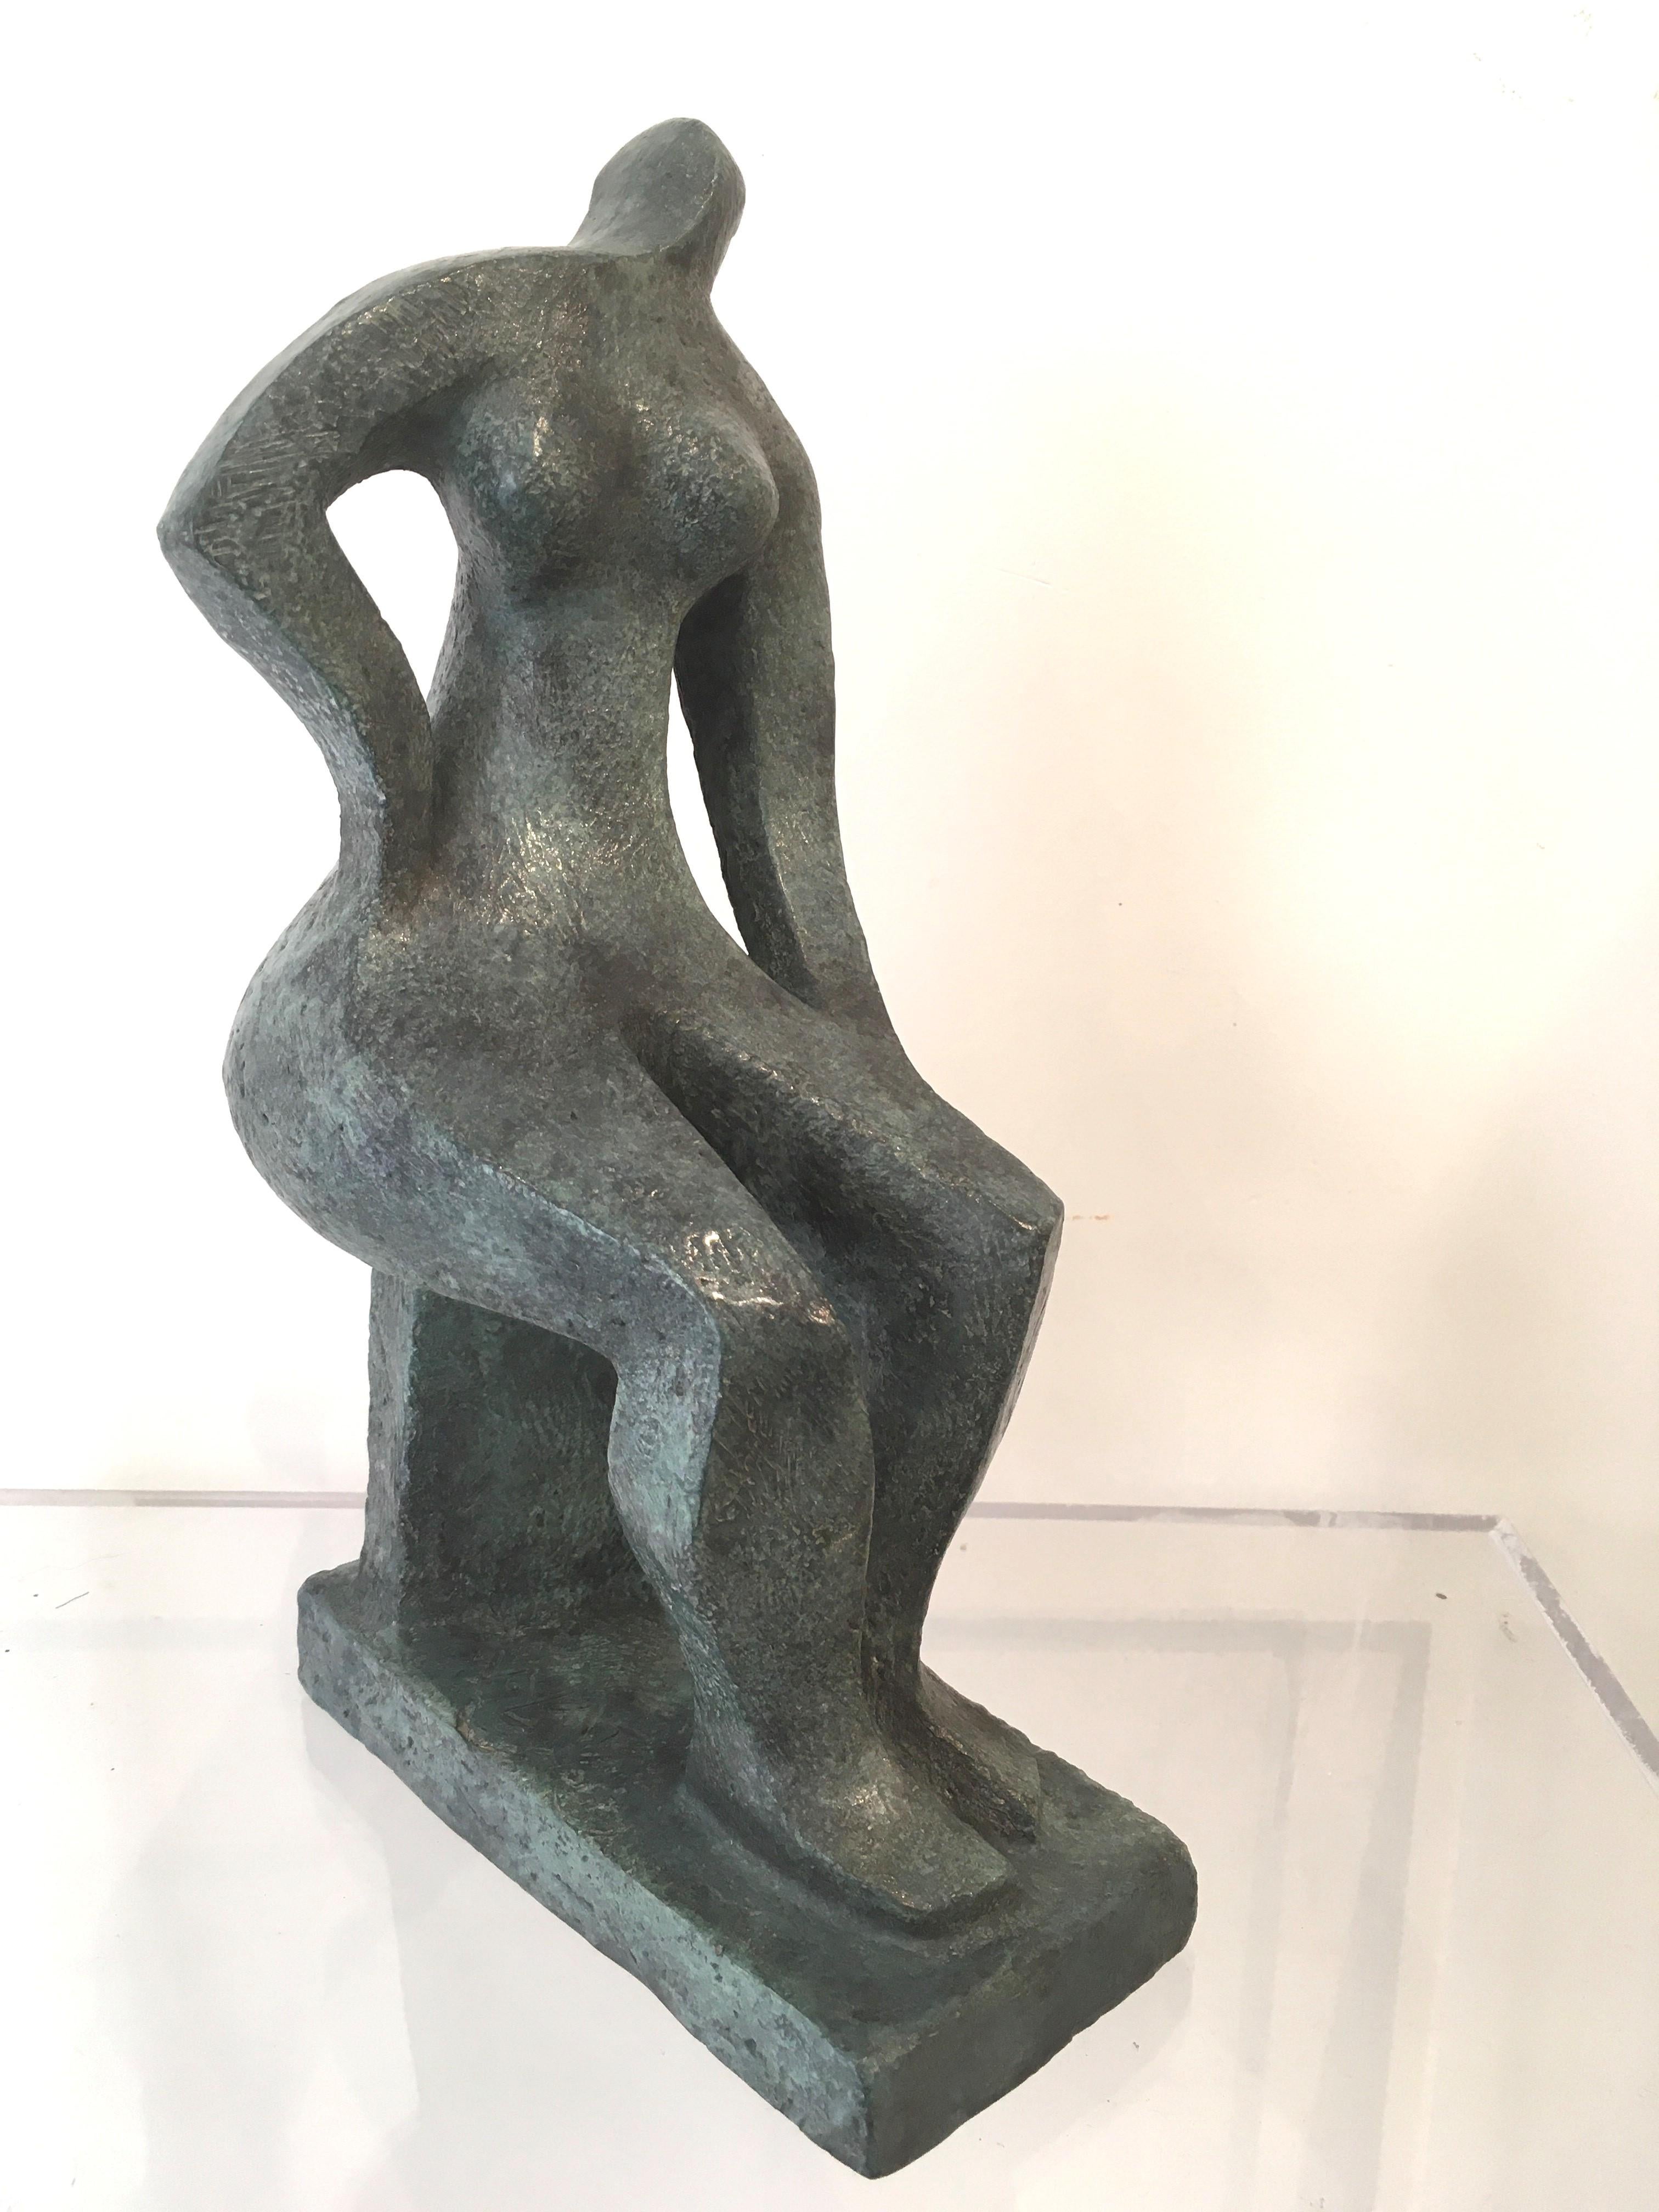 Sculpture en bronze, patine verte antique, 26 cm x 15 cm x 10 cm.
Édition limitée à 8 exemplaires + 4 épreuves d'artiste. 